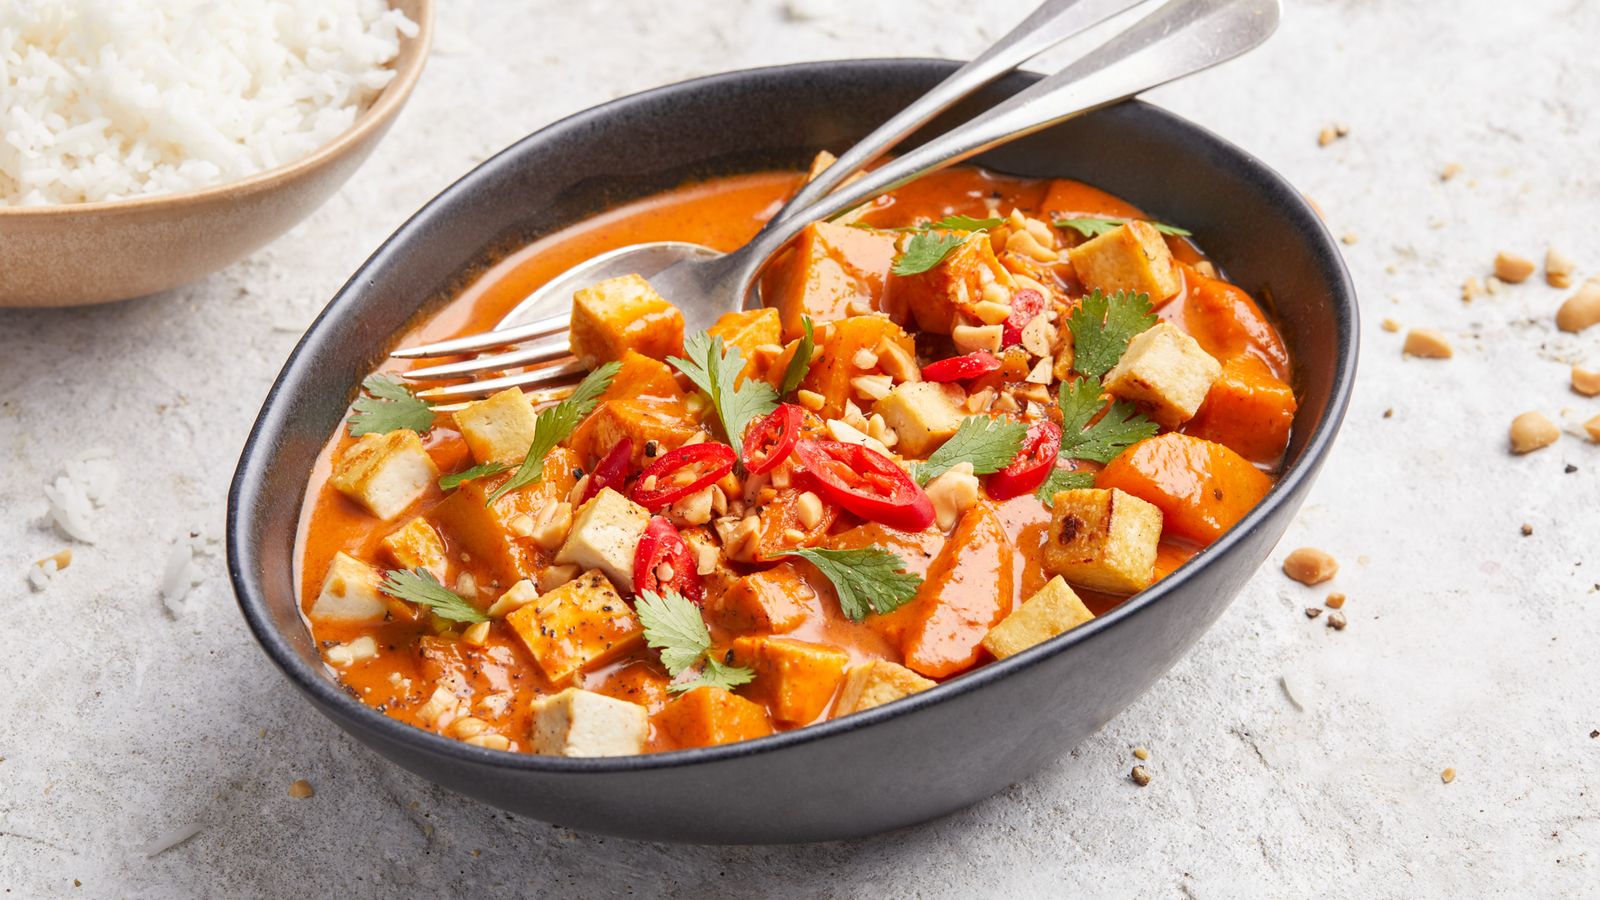 Massaman-Curry mit Tofu, Karotten und Kartoffeln